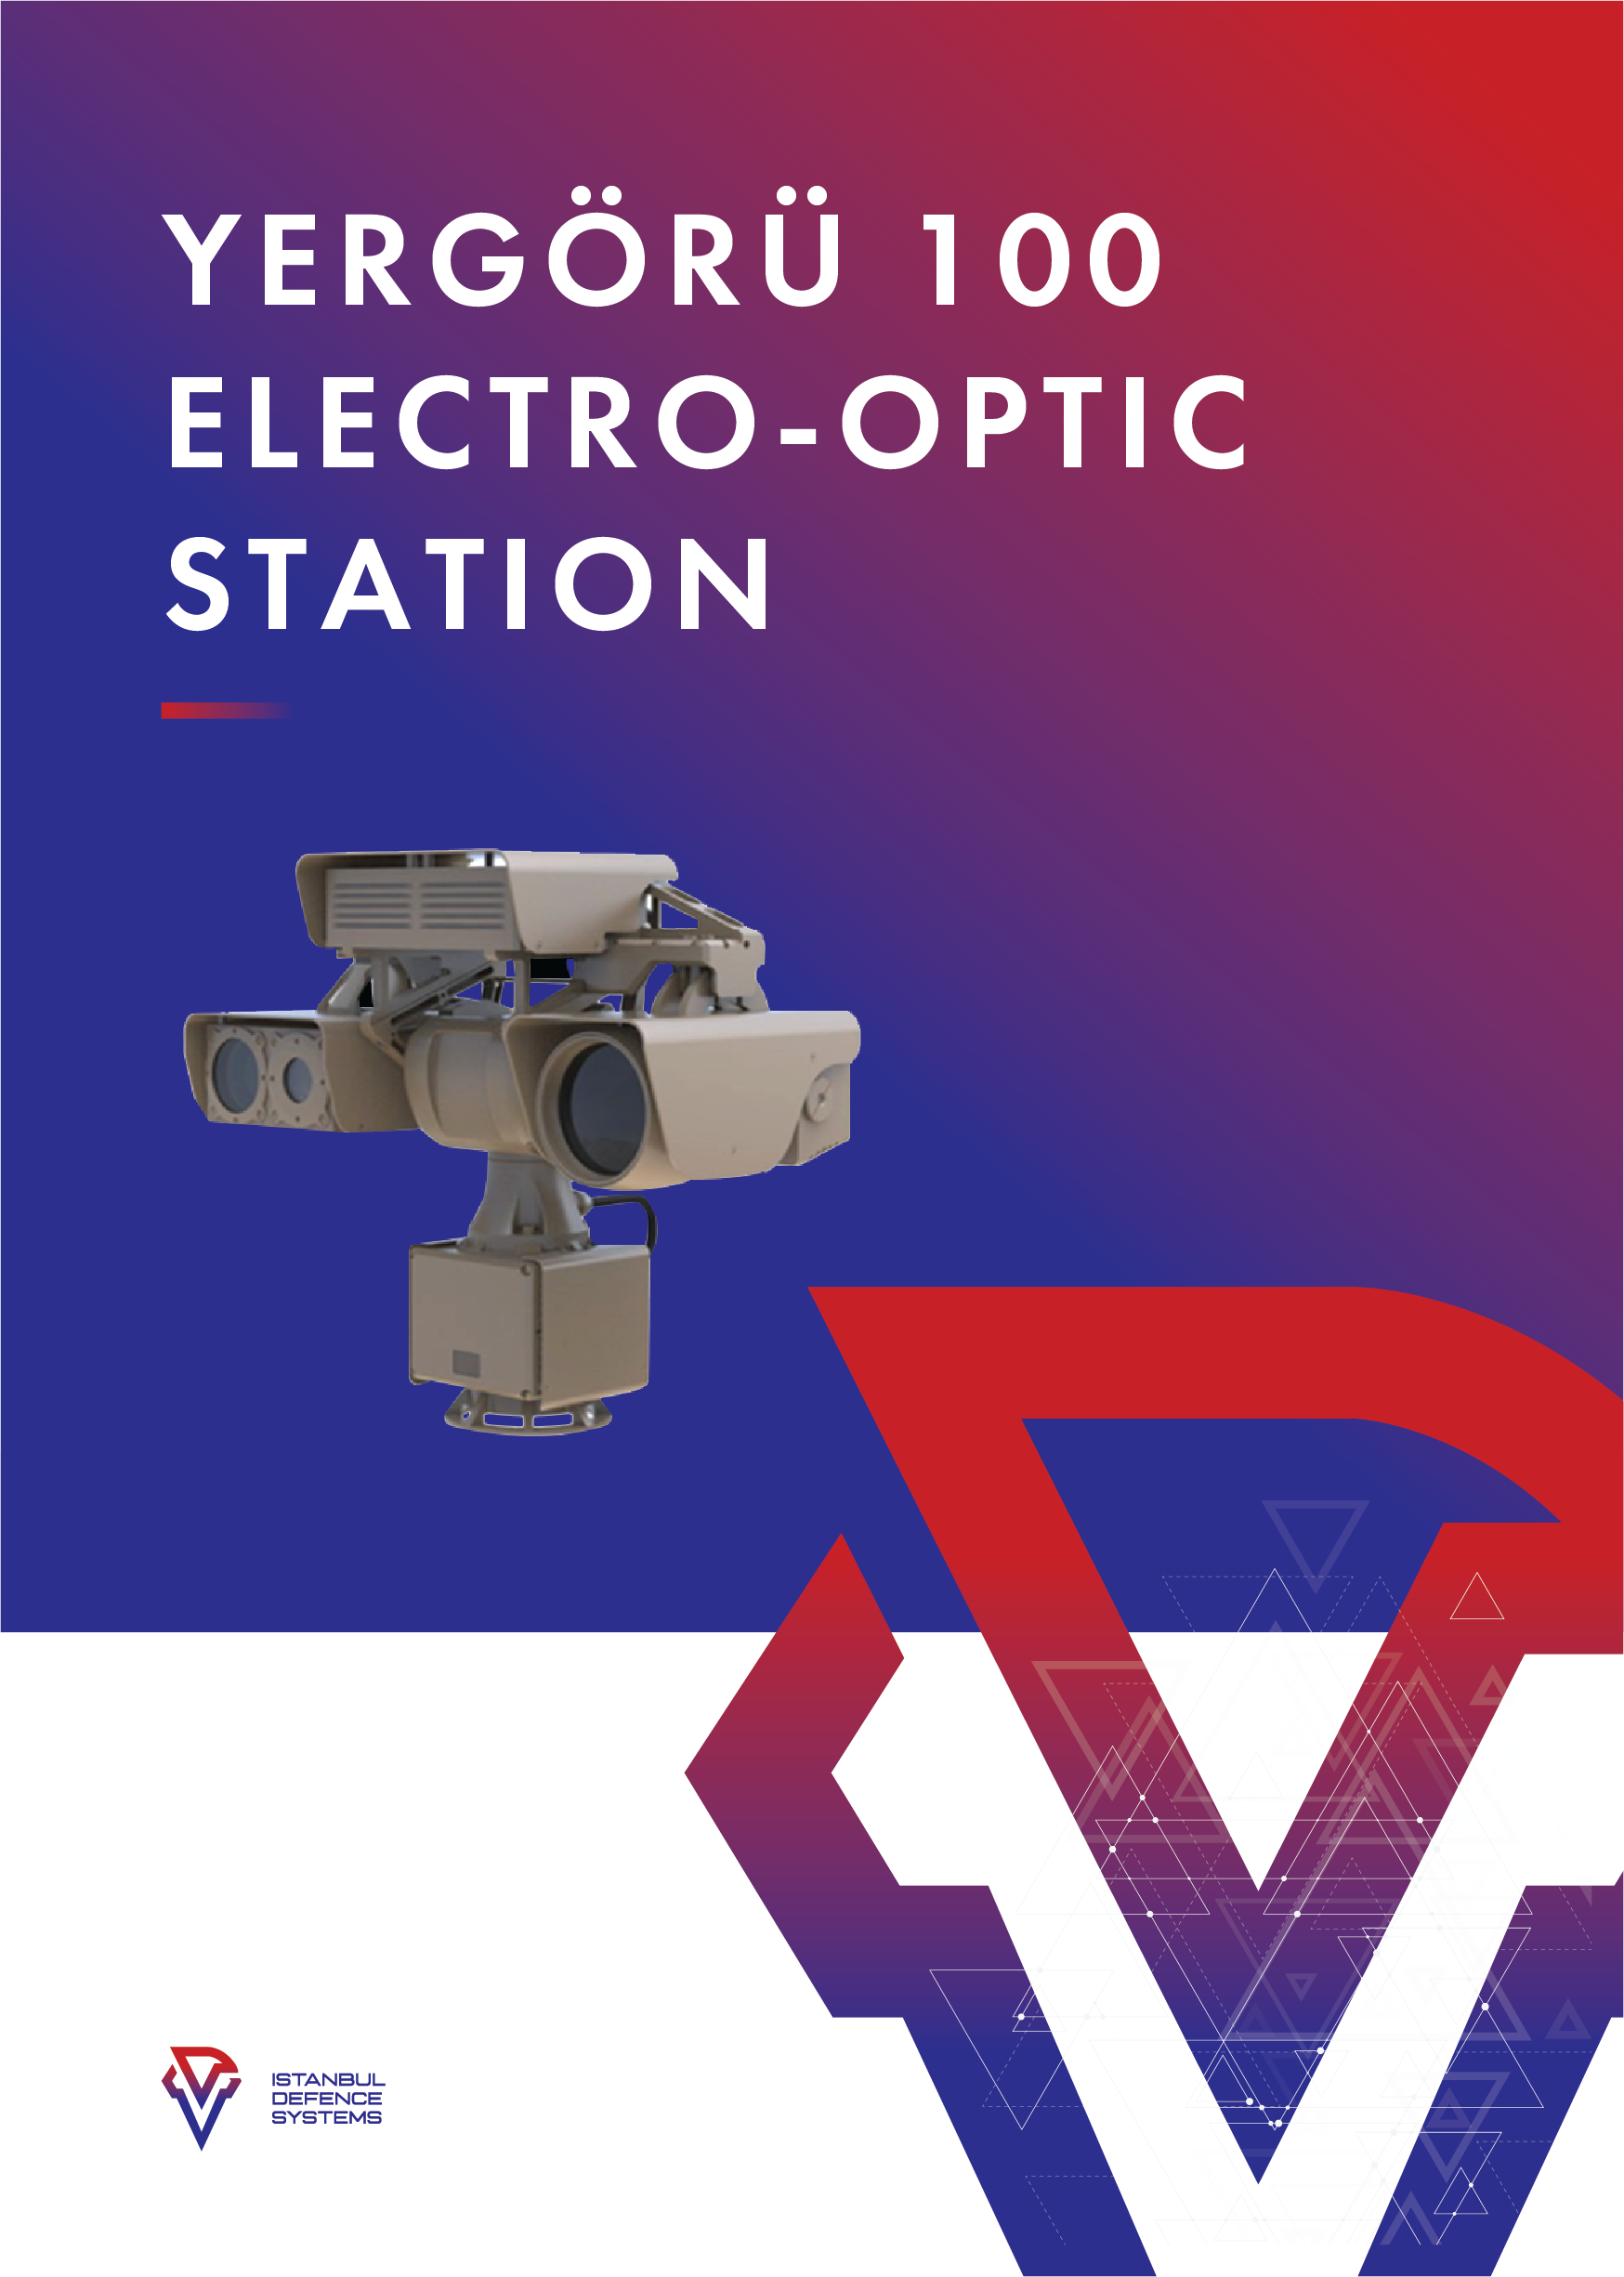 yergoru-100-electro-optic@4x.png